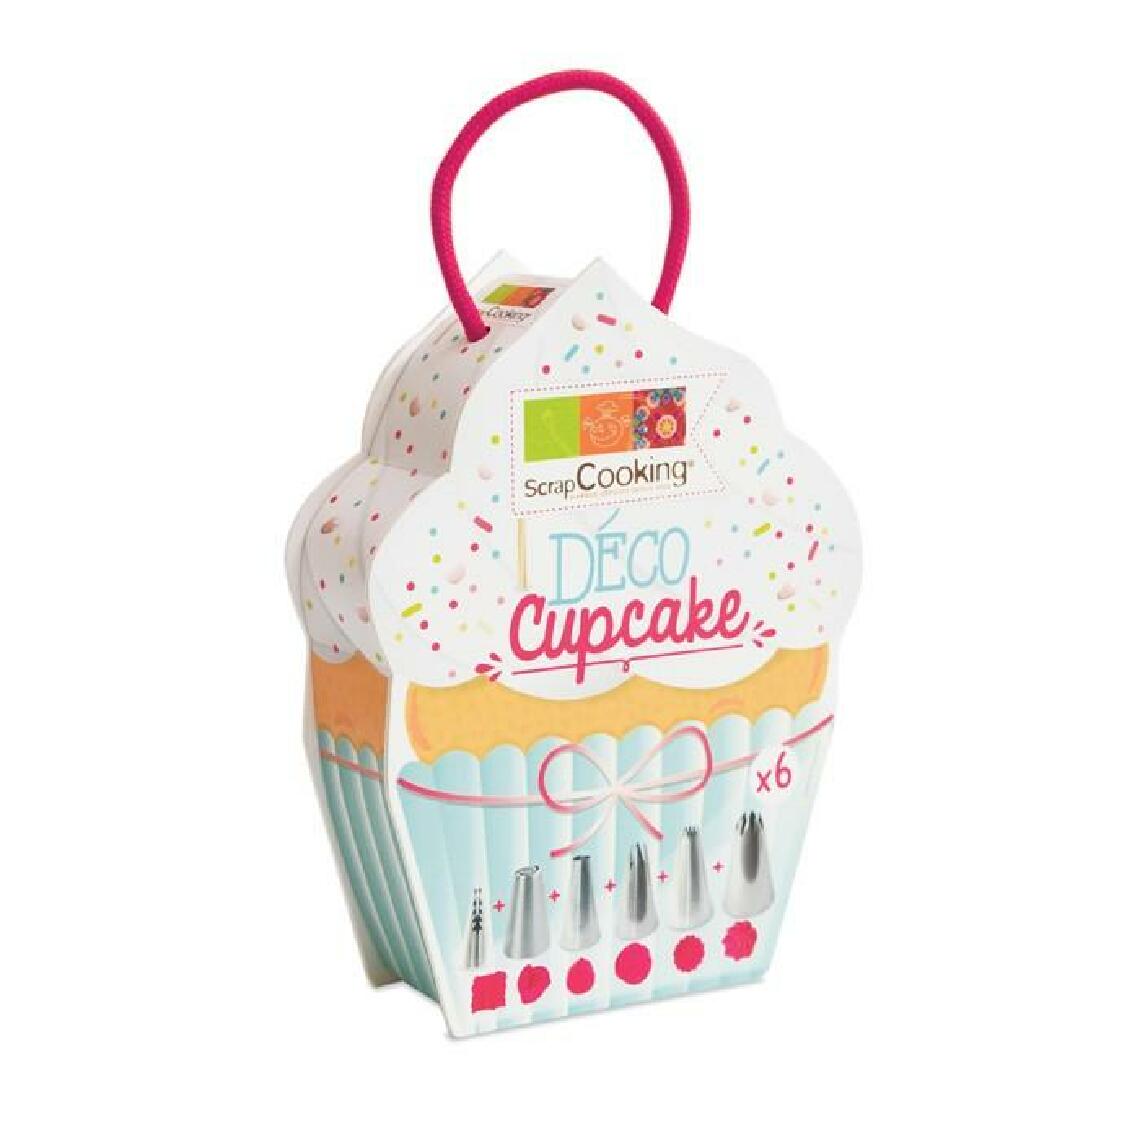 Scrapcooking - 6 douilles inox pour déco cupcake - Kits créatifs